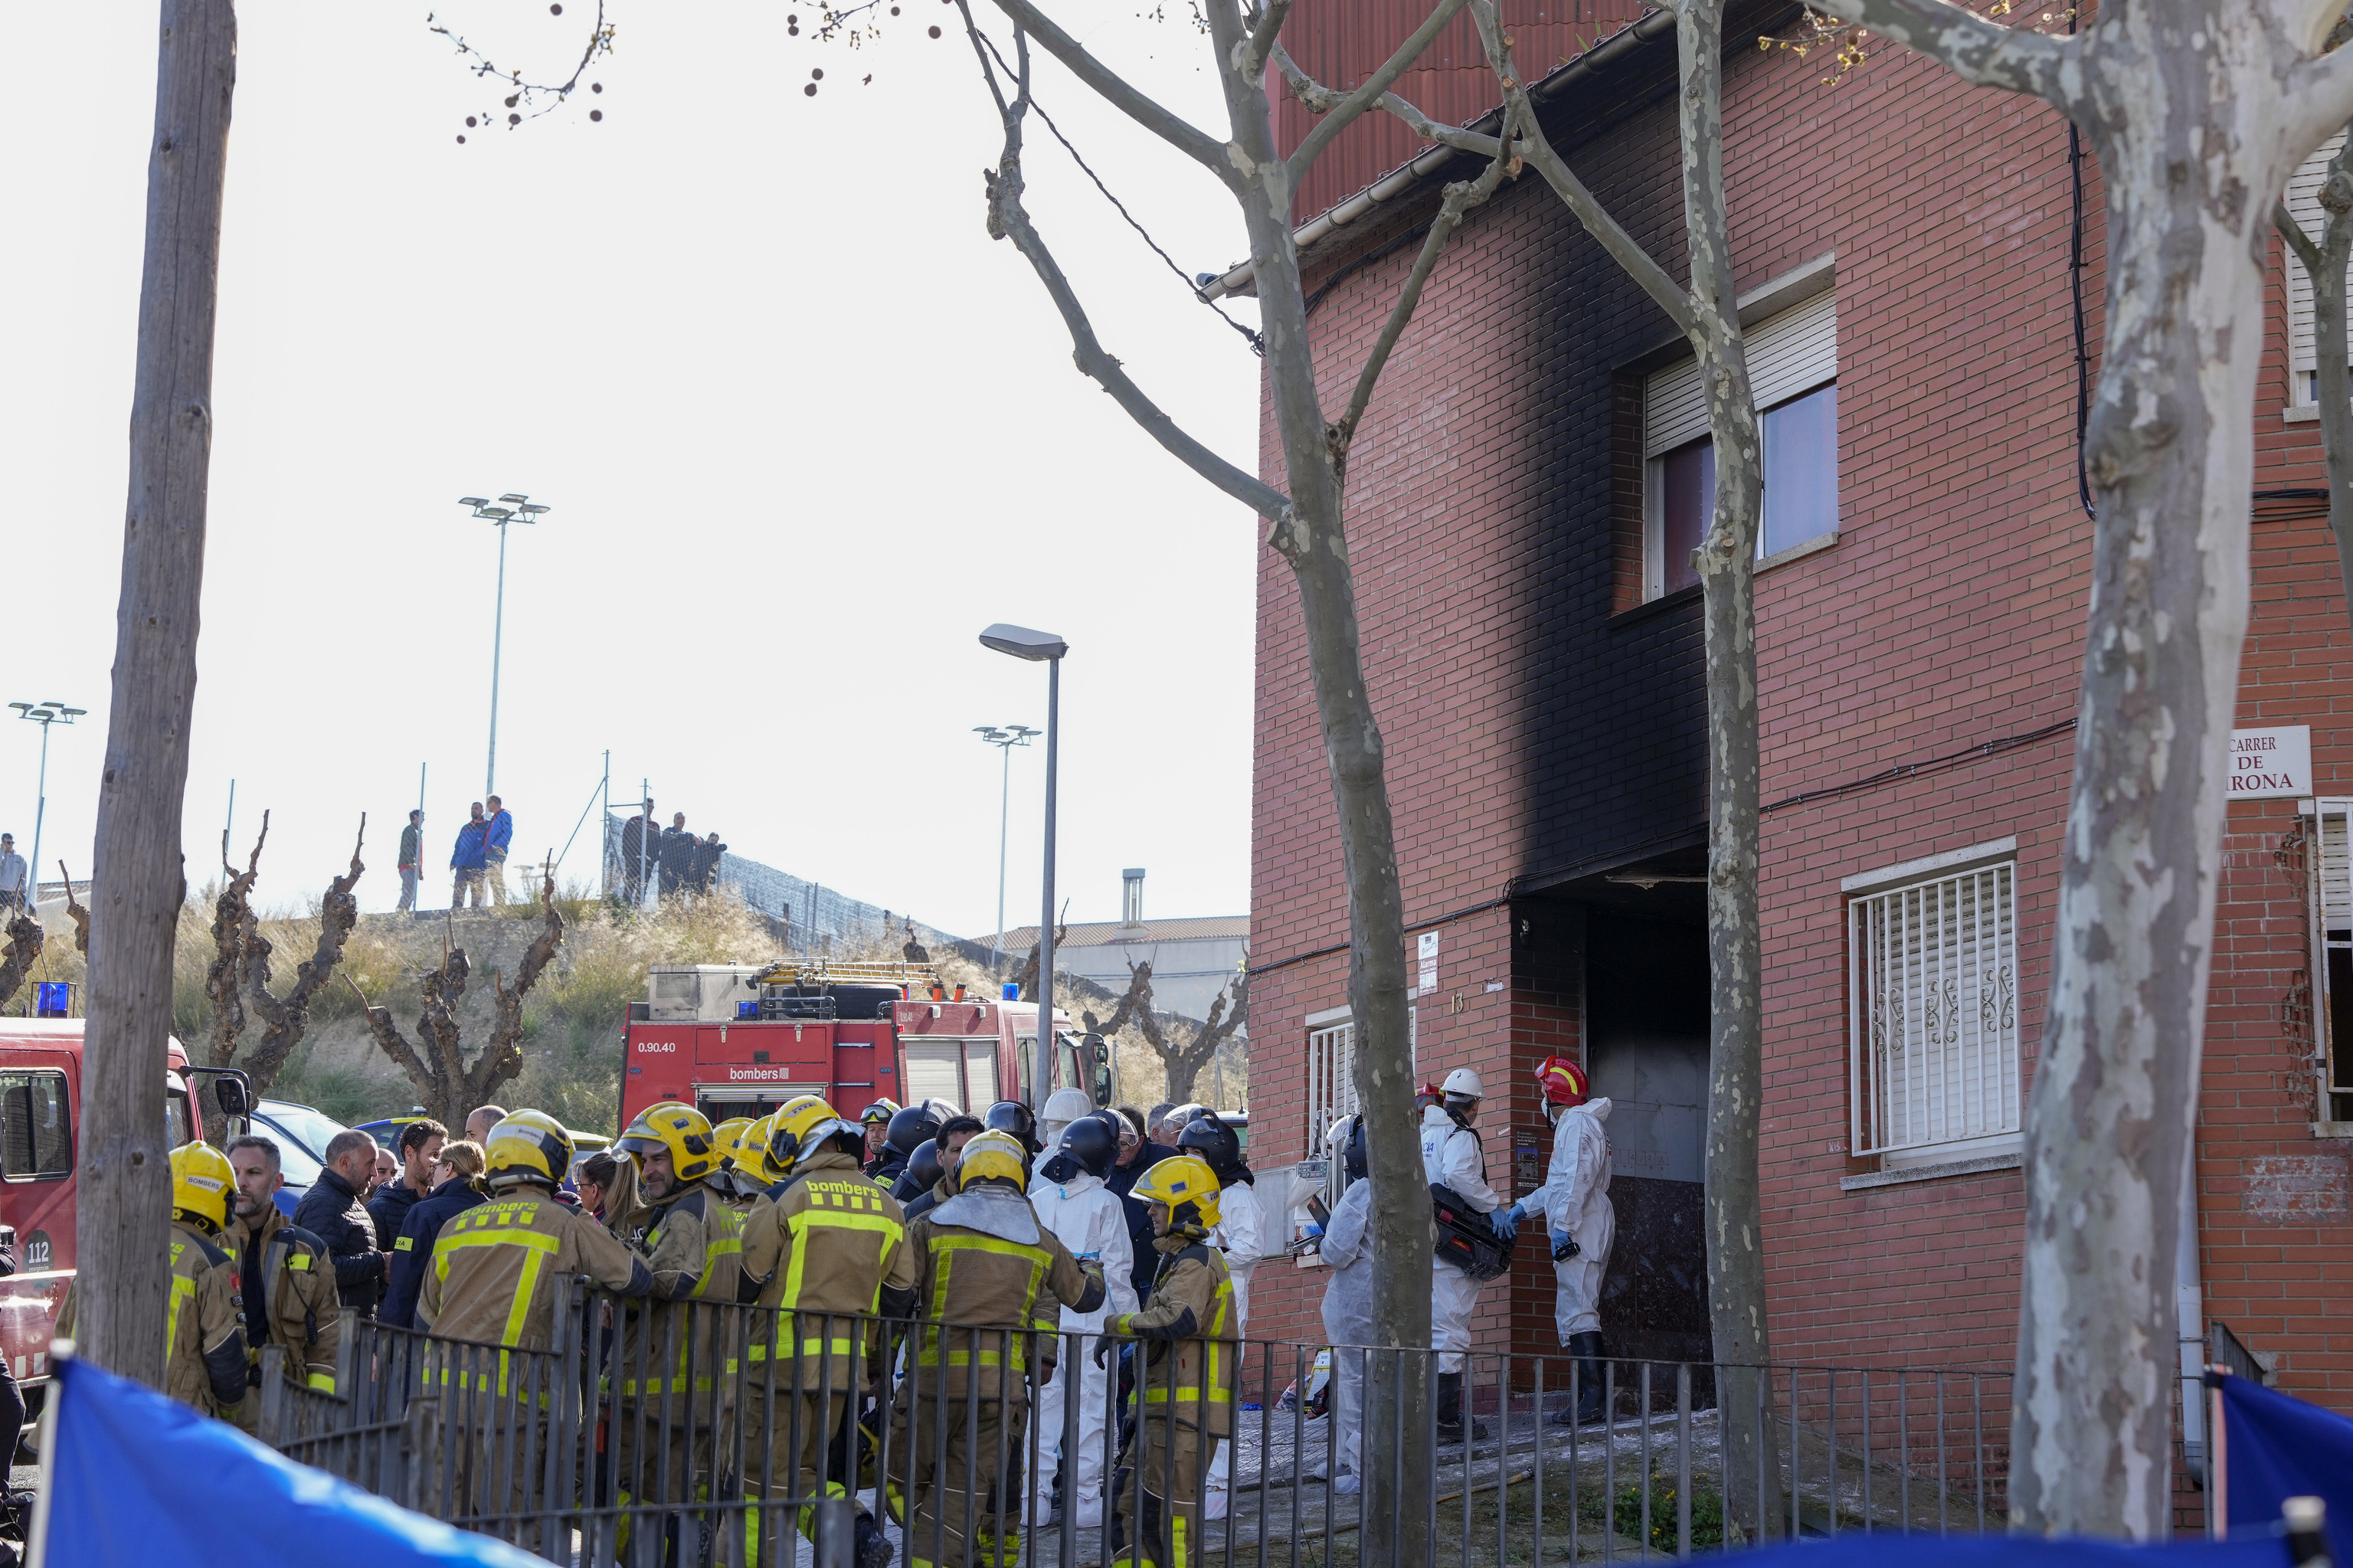 Tres personas han fallecido este mircoles en un incendio declarado en un bloque de viviendas de Rub (Barcelona) poco antes de las 7 de esta maana. Las tres personas fallecidas haban salido de su vivienda e intentaban abandonar el inmueble bajando por las escaleras.